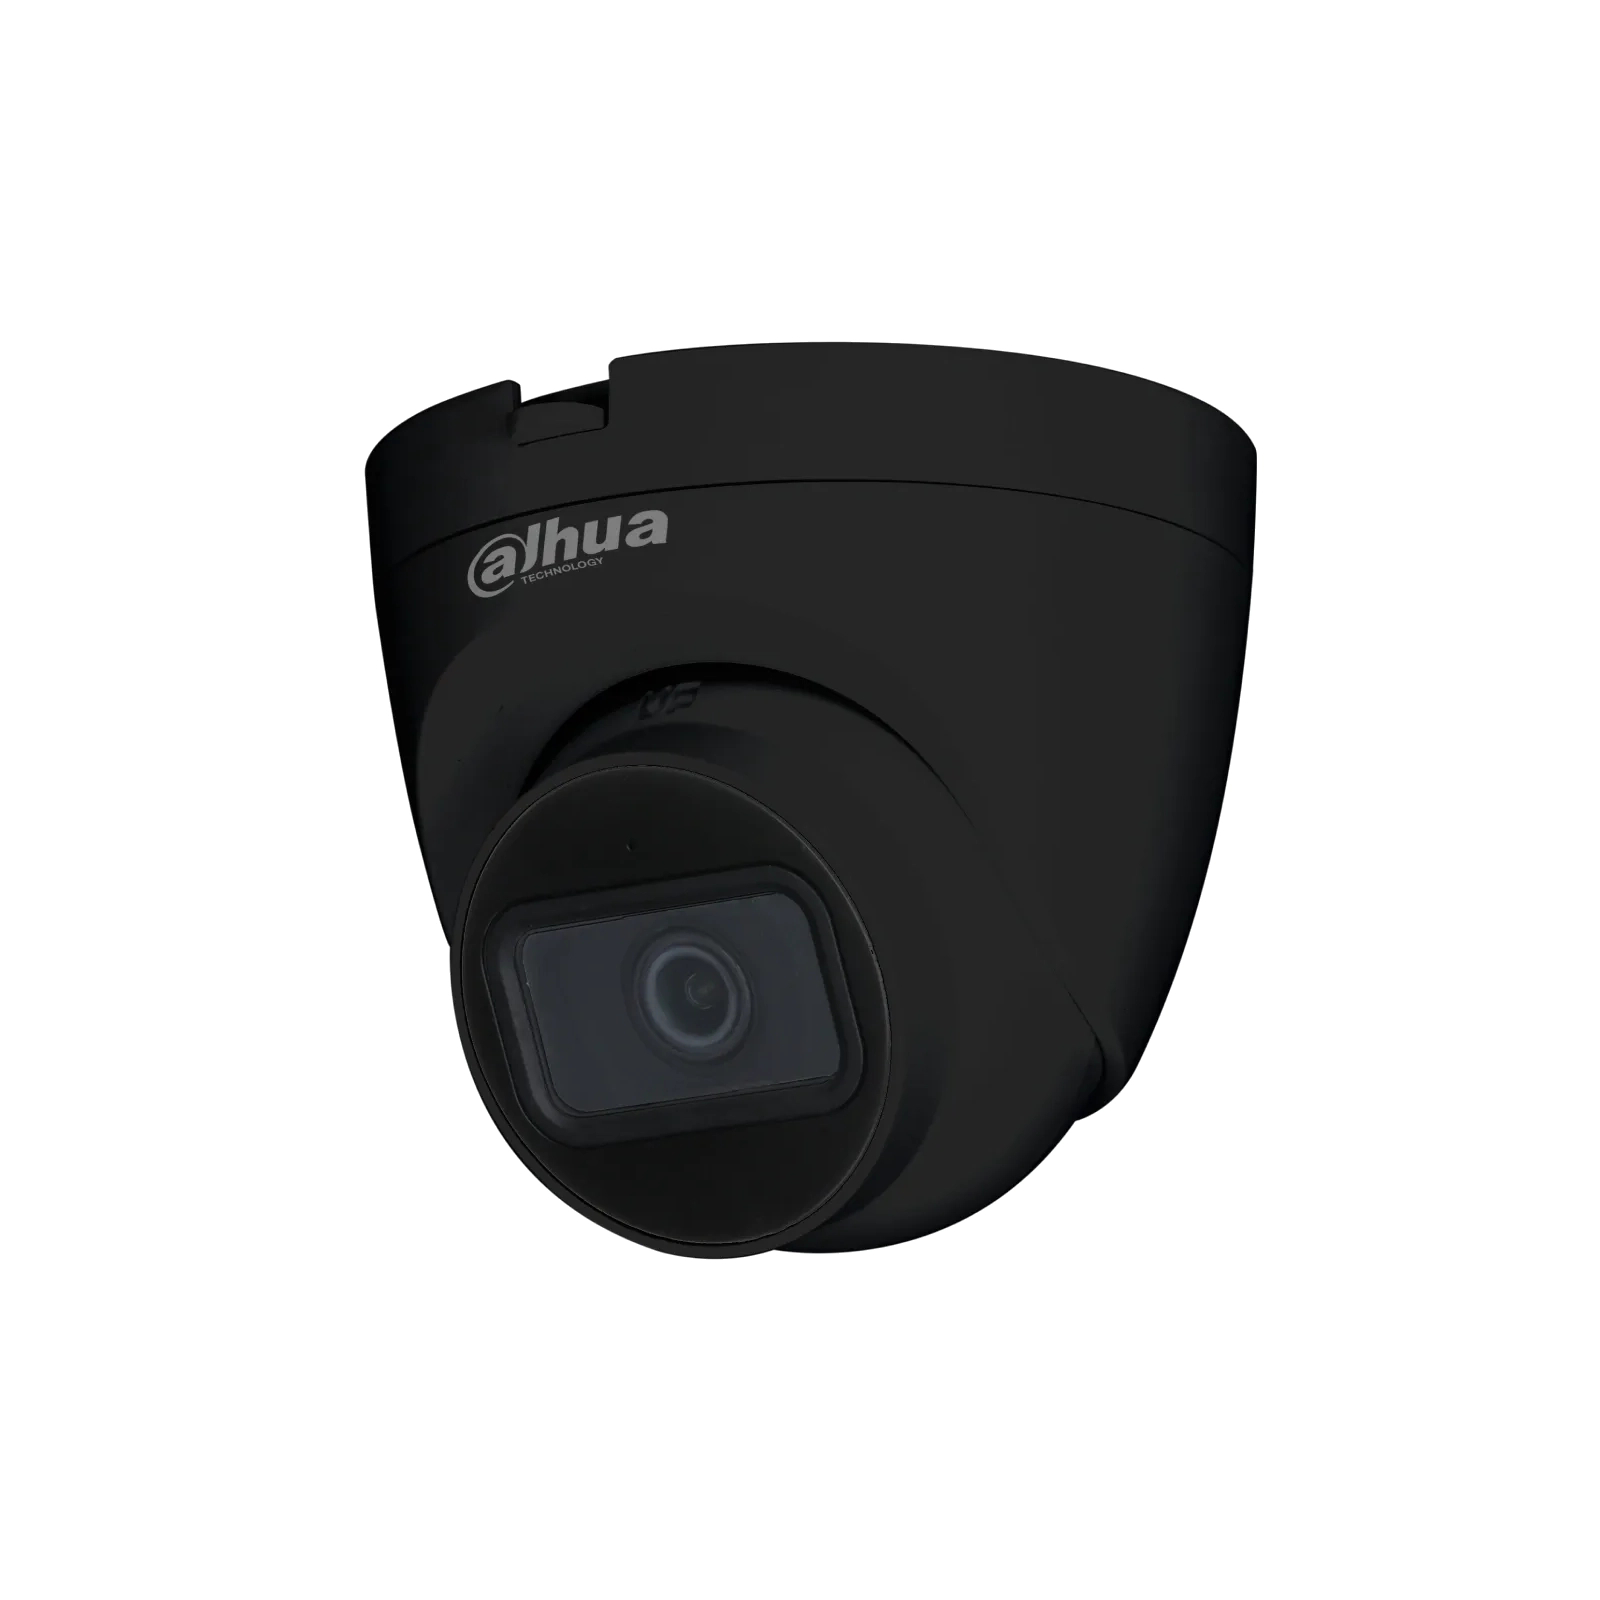 Камера видеонаблюдения Dahua DH-HAC-HDW1200TRQP-BE (2.8)